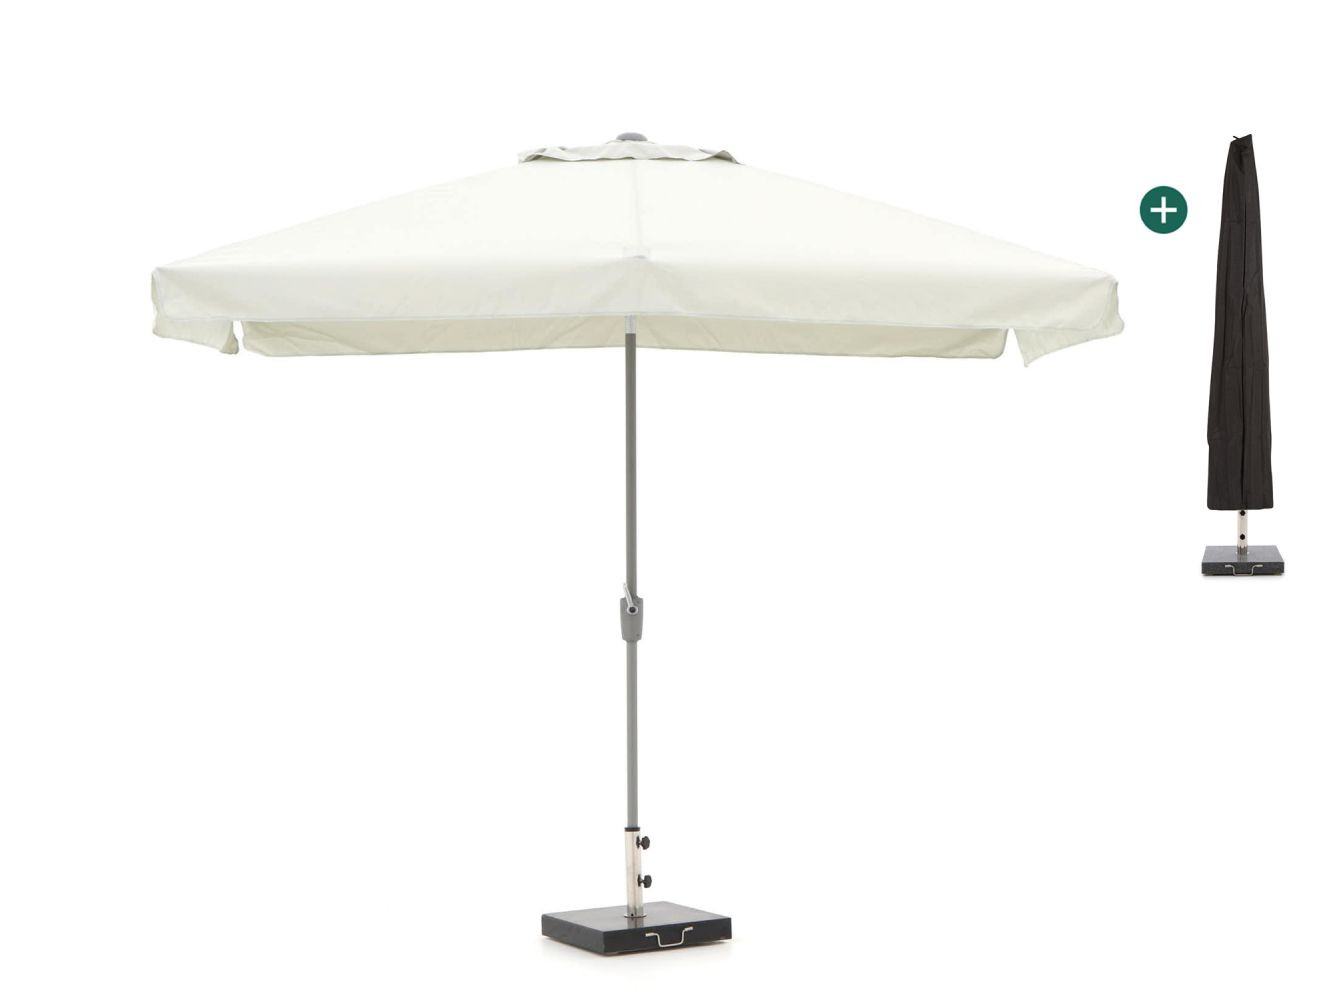 Shadowline Aruba parasol 300x200cm - Laagste prijsgarantie!